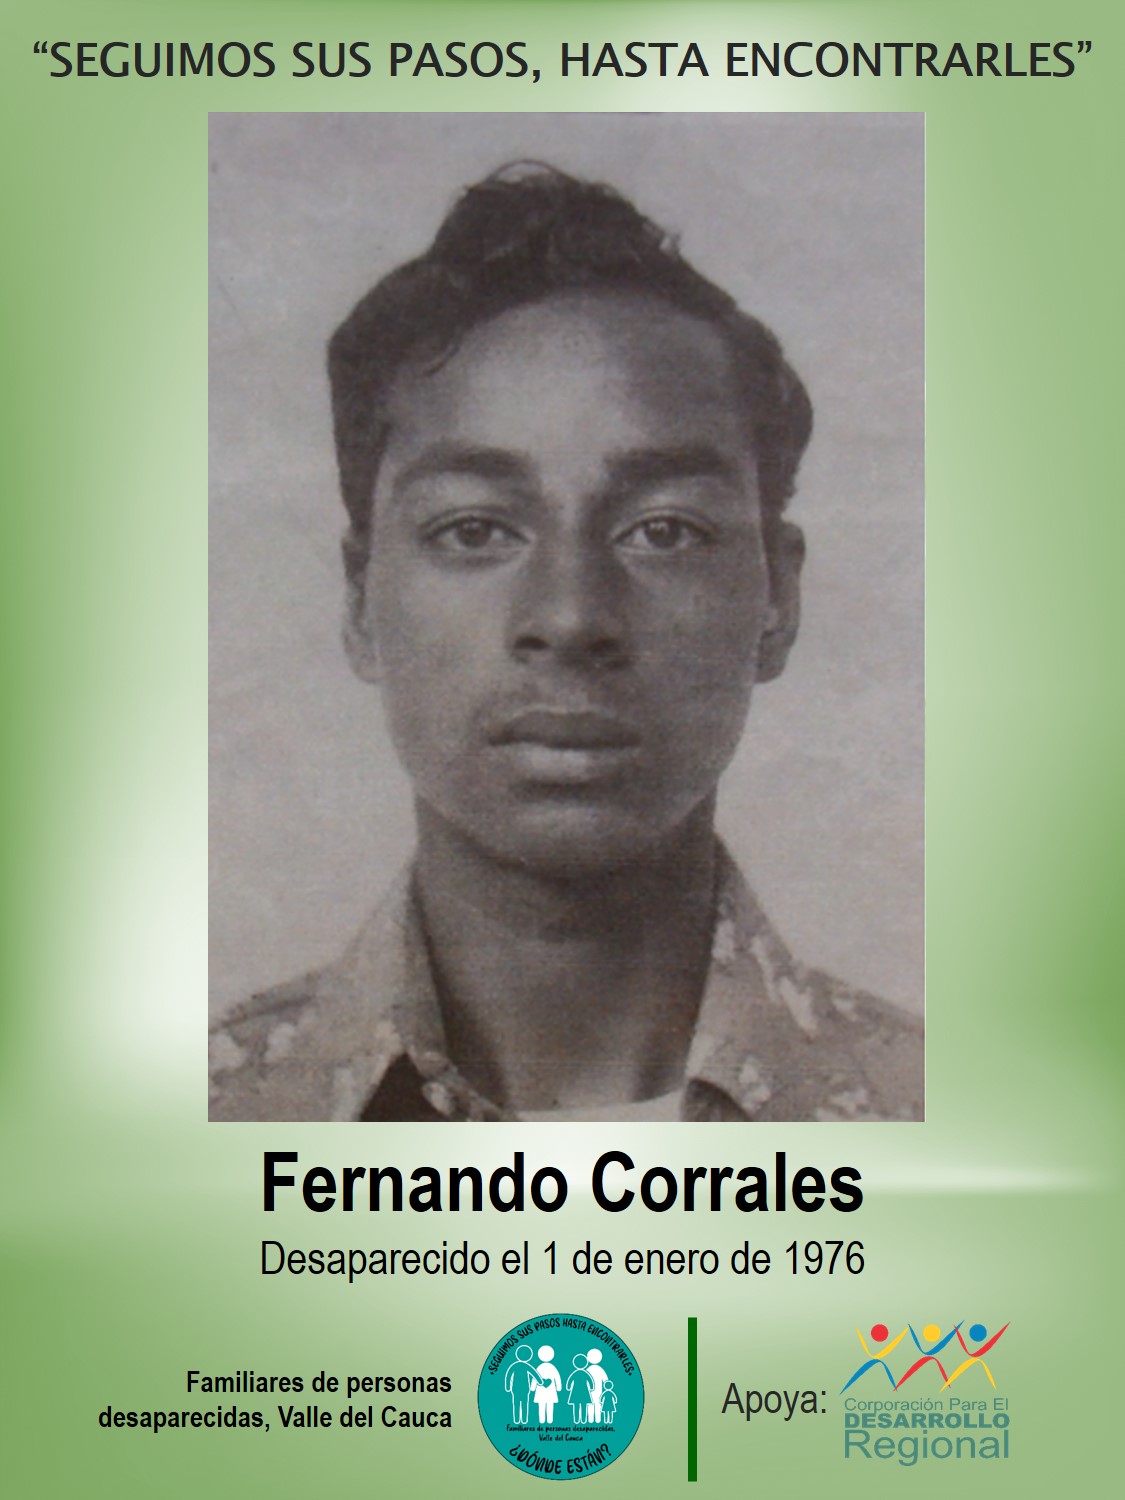 Fernando Corrales